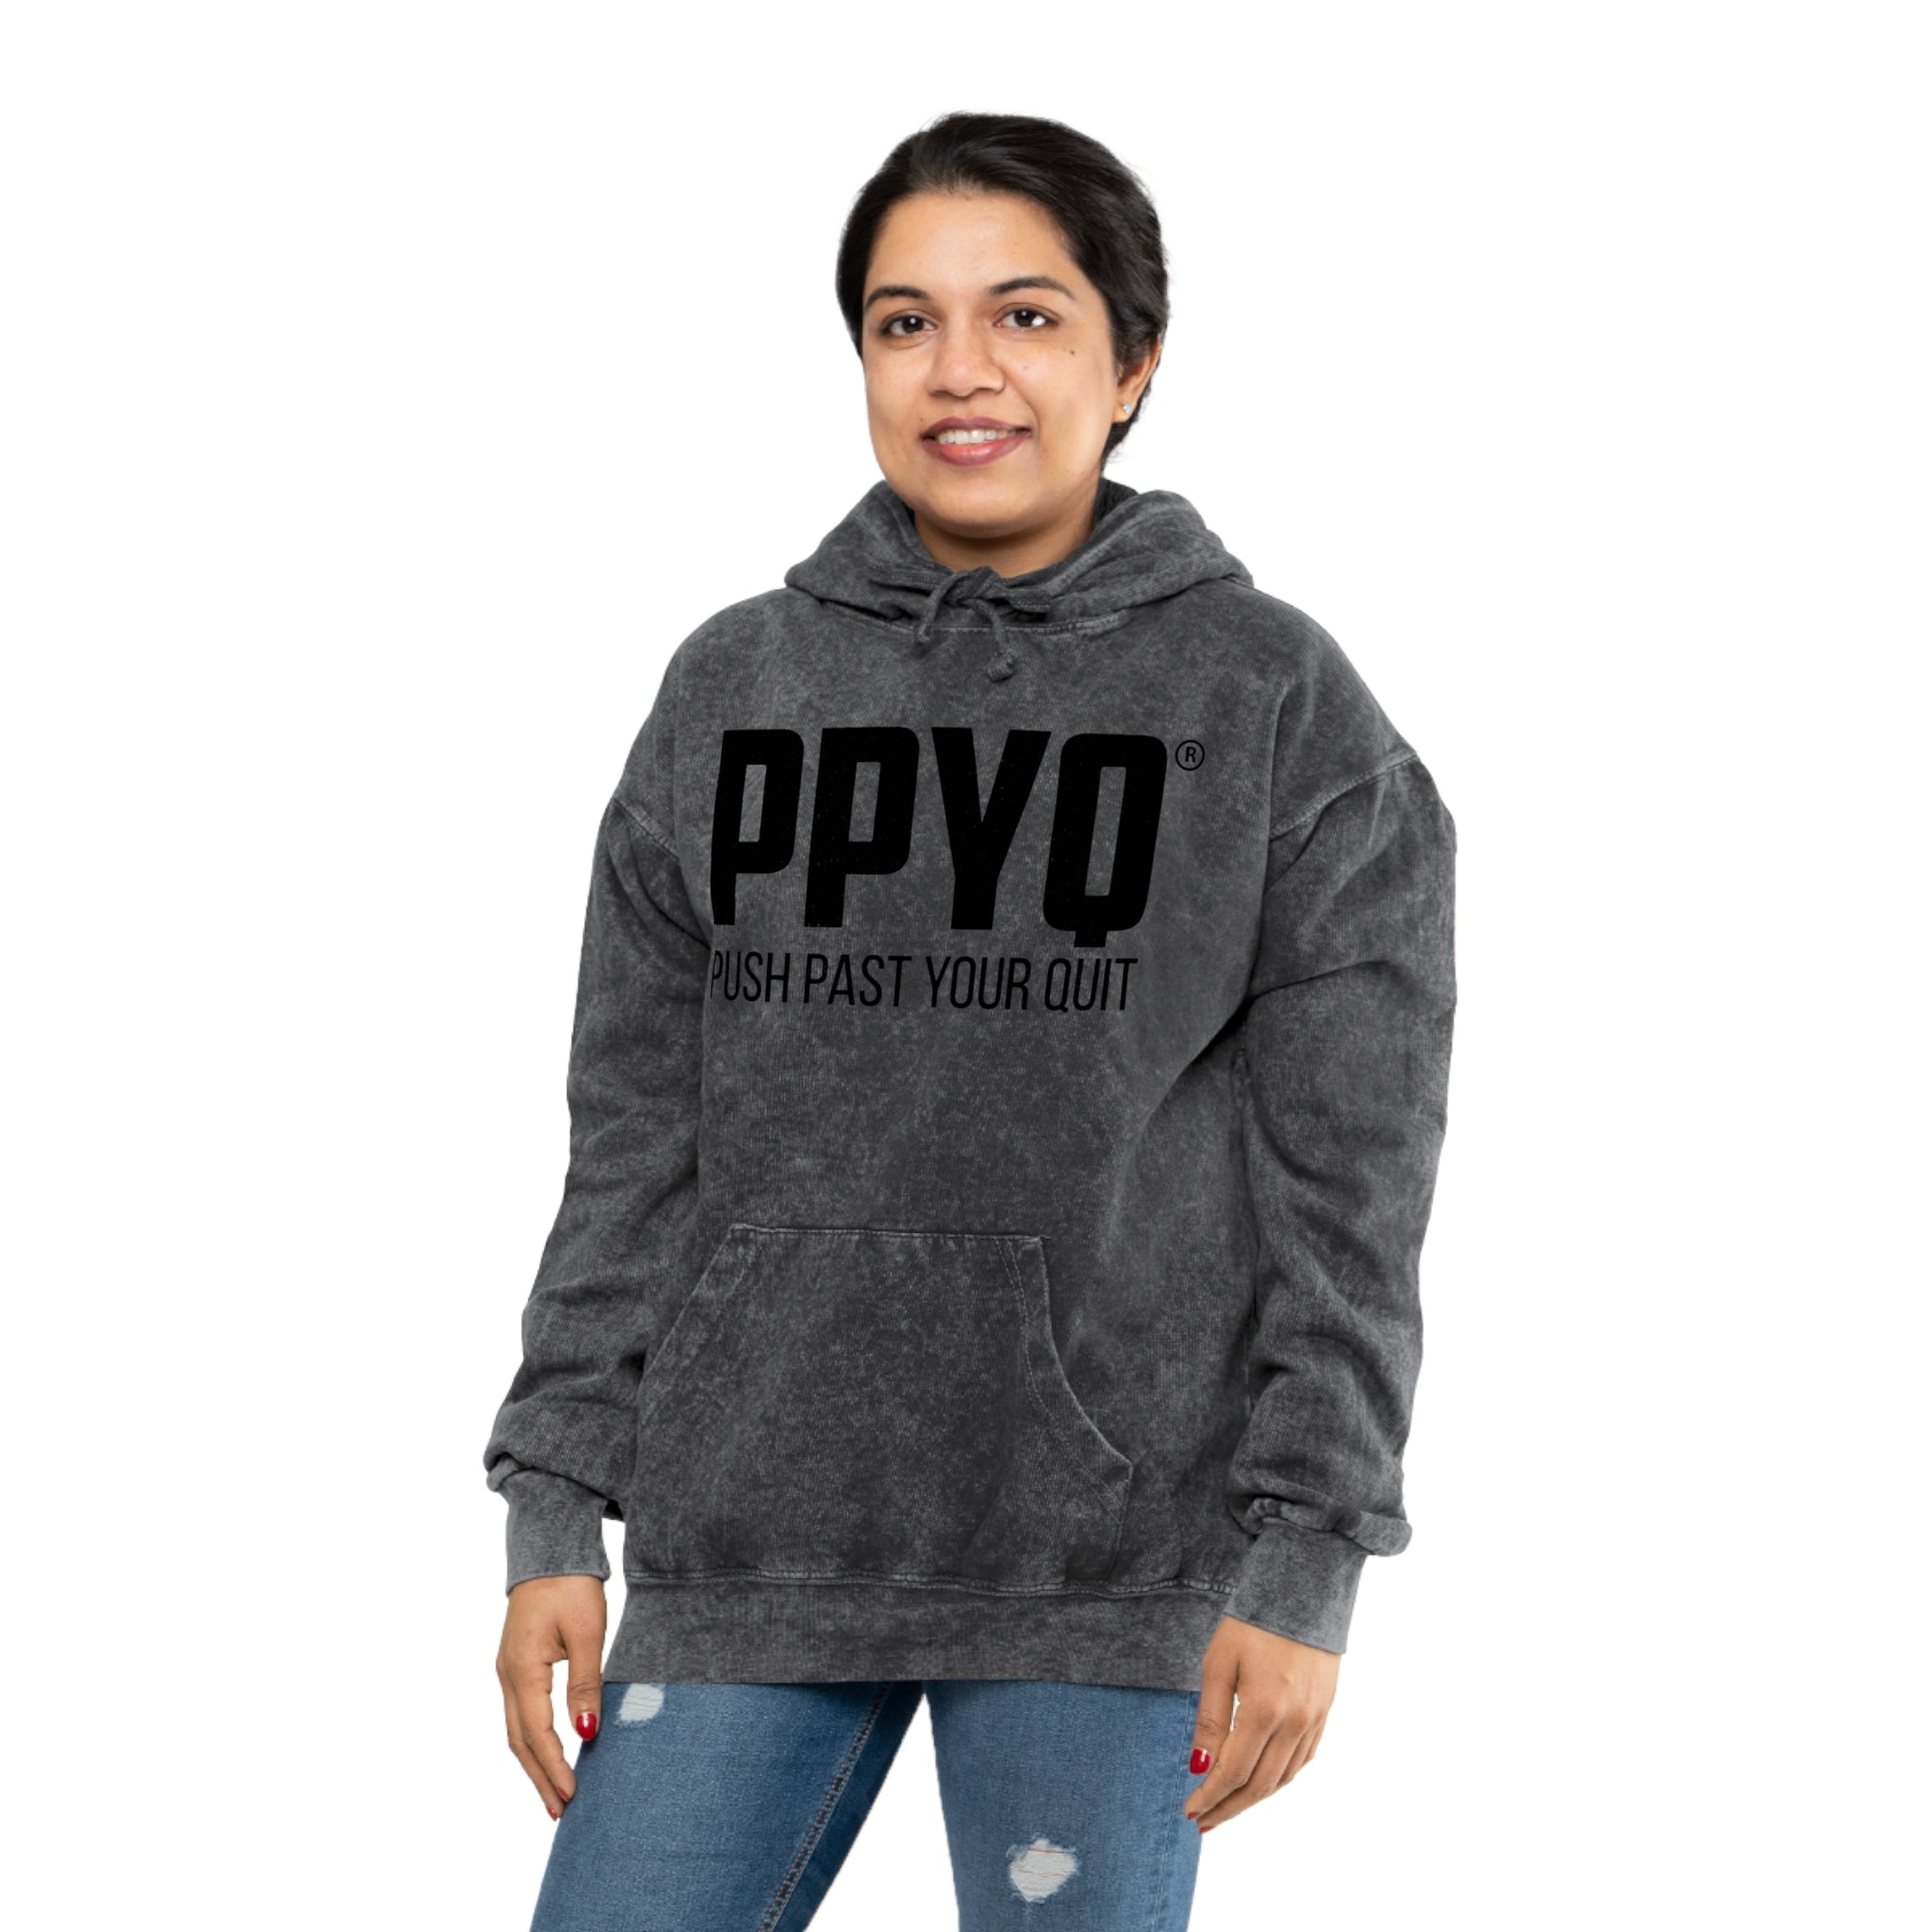 PPYQ® Original Unisex Mineral Wash Hoodie